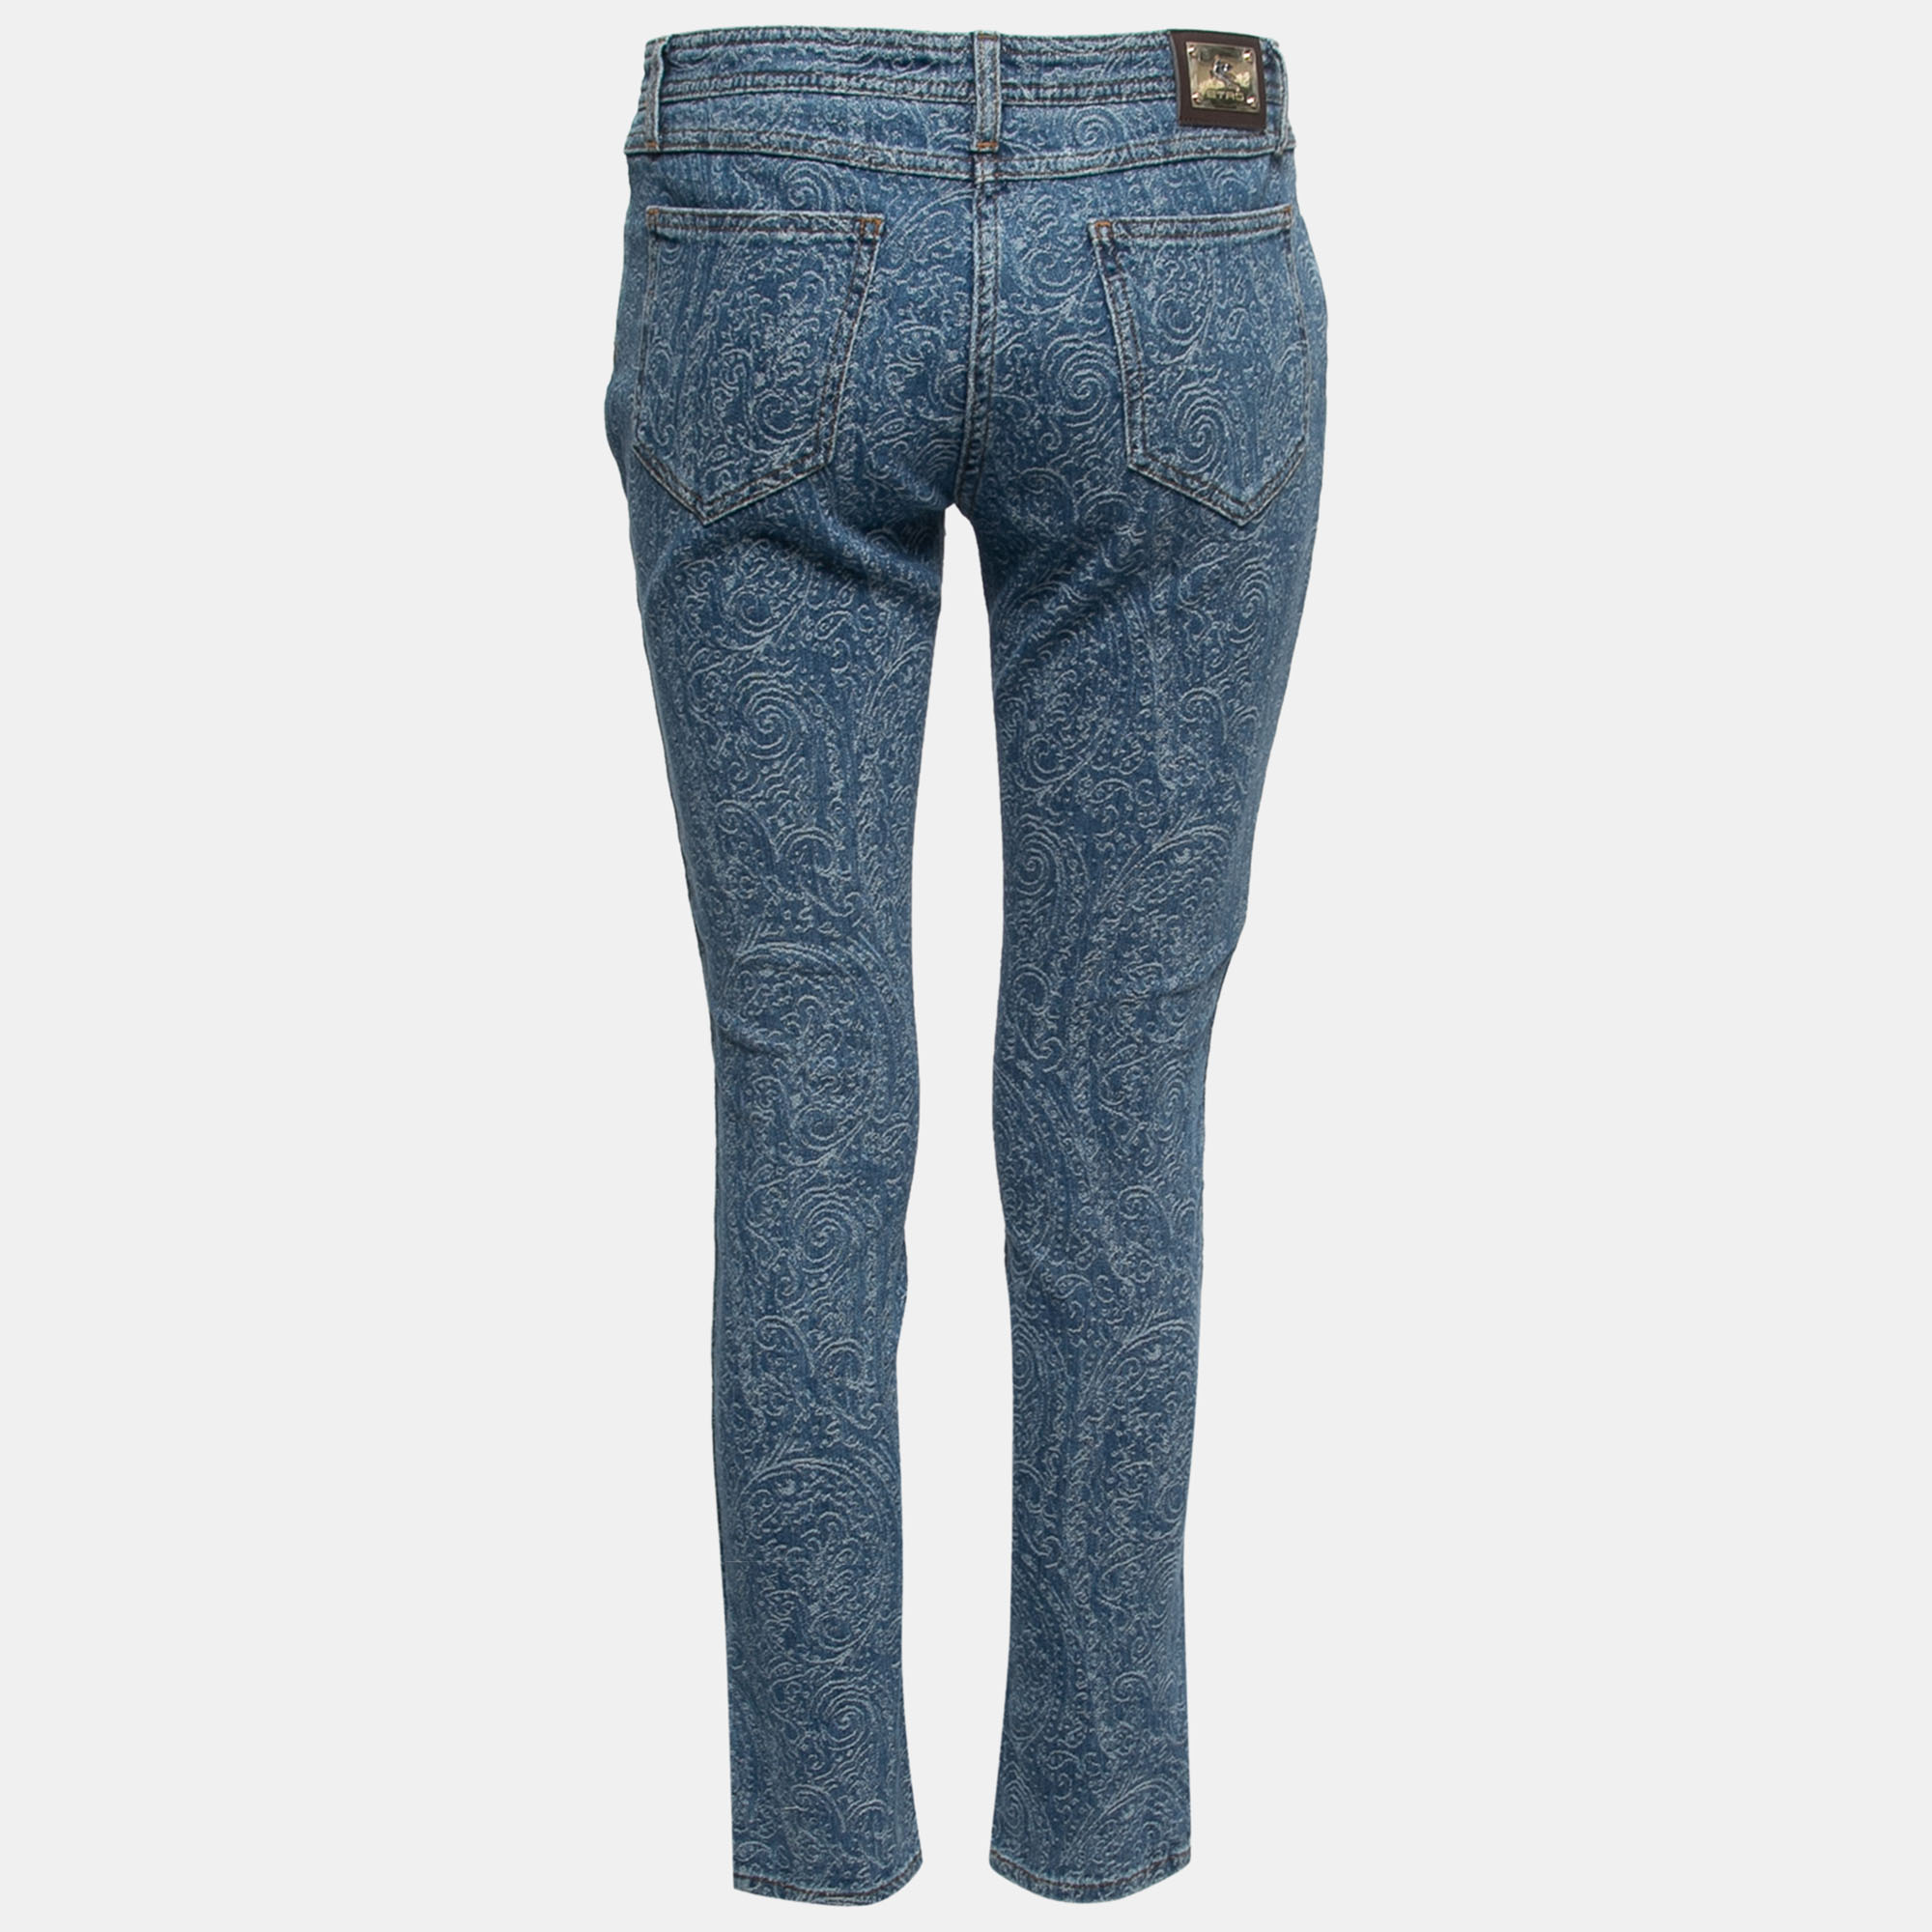 

Etro Blue Paisley Patterned Denim Jeans  Waist 31